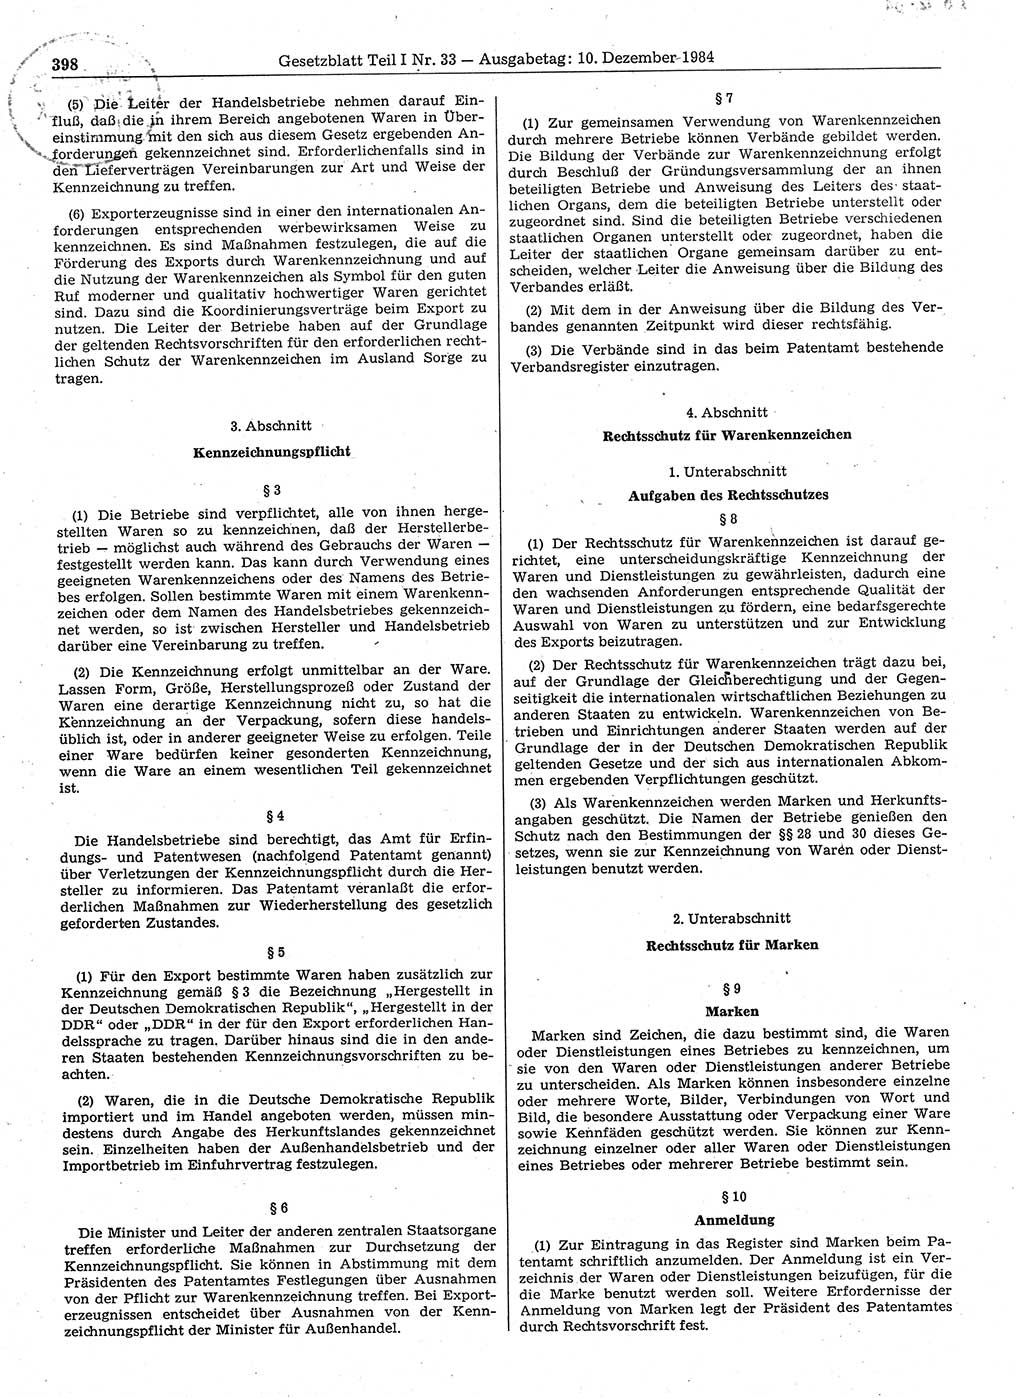 Gesetzblatt (GBl.) der Deutschen Demokratischen Republik (DDR) Teil Ⅰ 1984, Seite 398 (GBl. DDR Ⅰ 1984, S. 398)